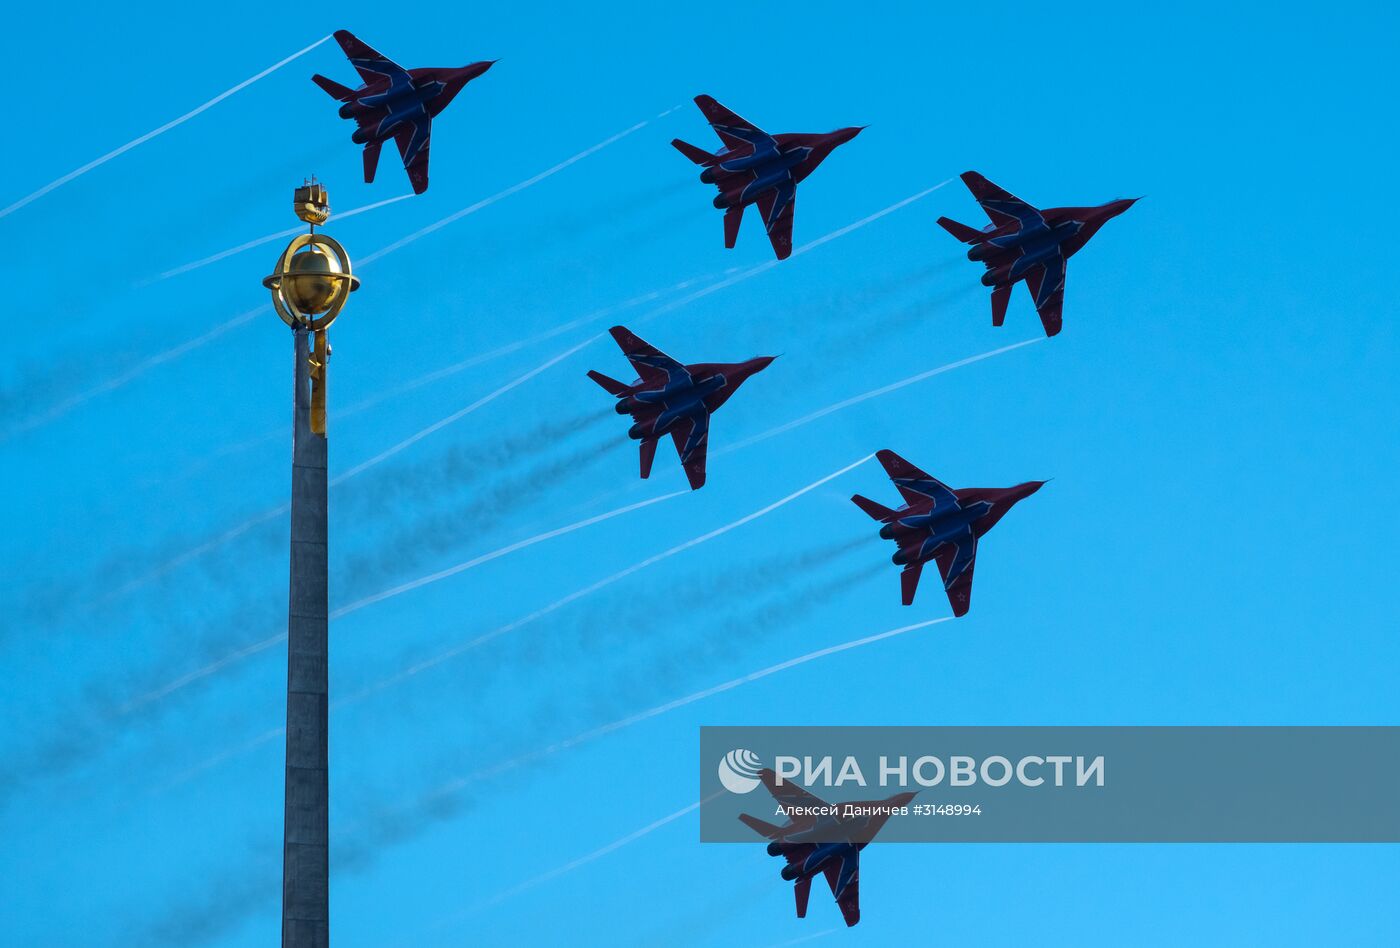 Празднование 105-летия Воздушно-космических сил РФ в Санкт-Петербурге